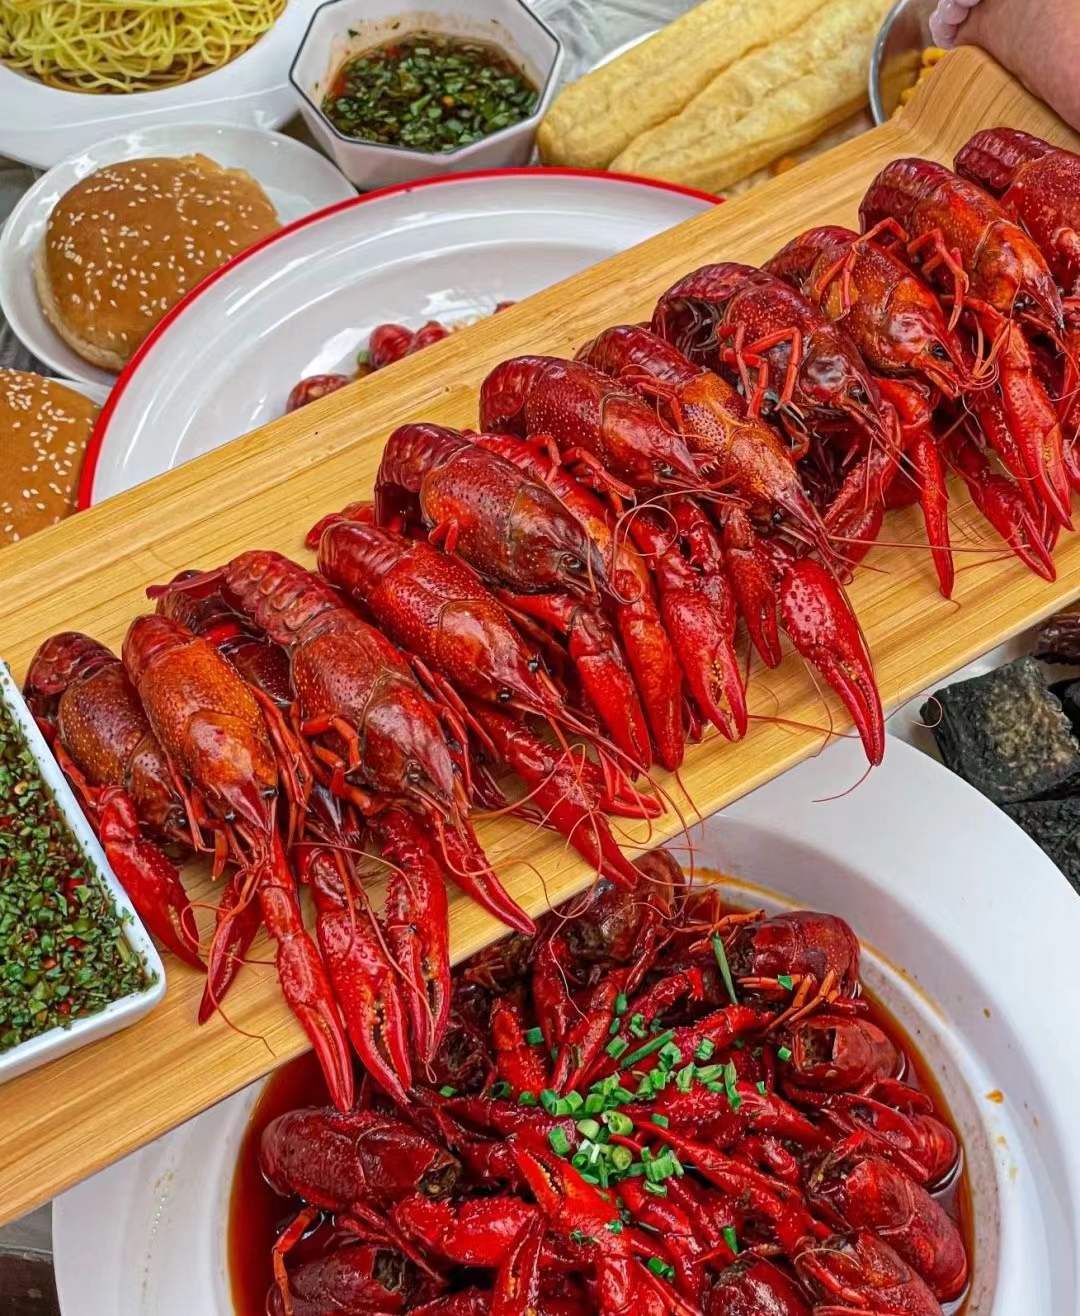 餐厅推出10元一斤小龙虾 我们的“吃虾自由”真的来了吗?